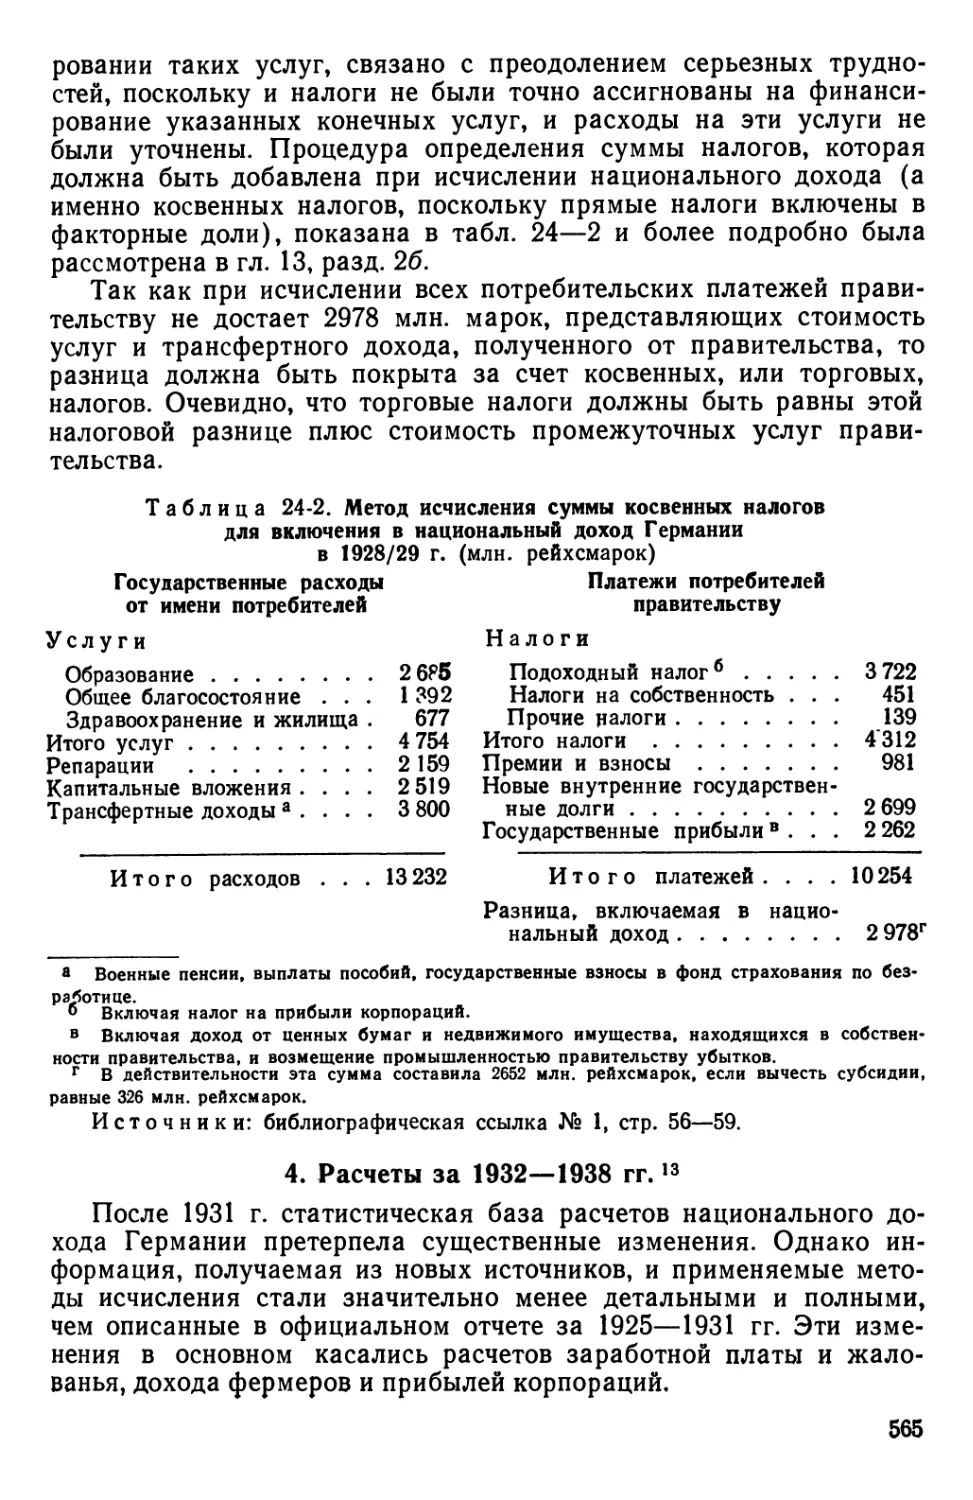 4. Расчеты за 1932—1938 гг